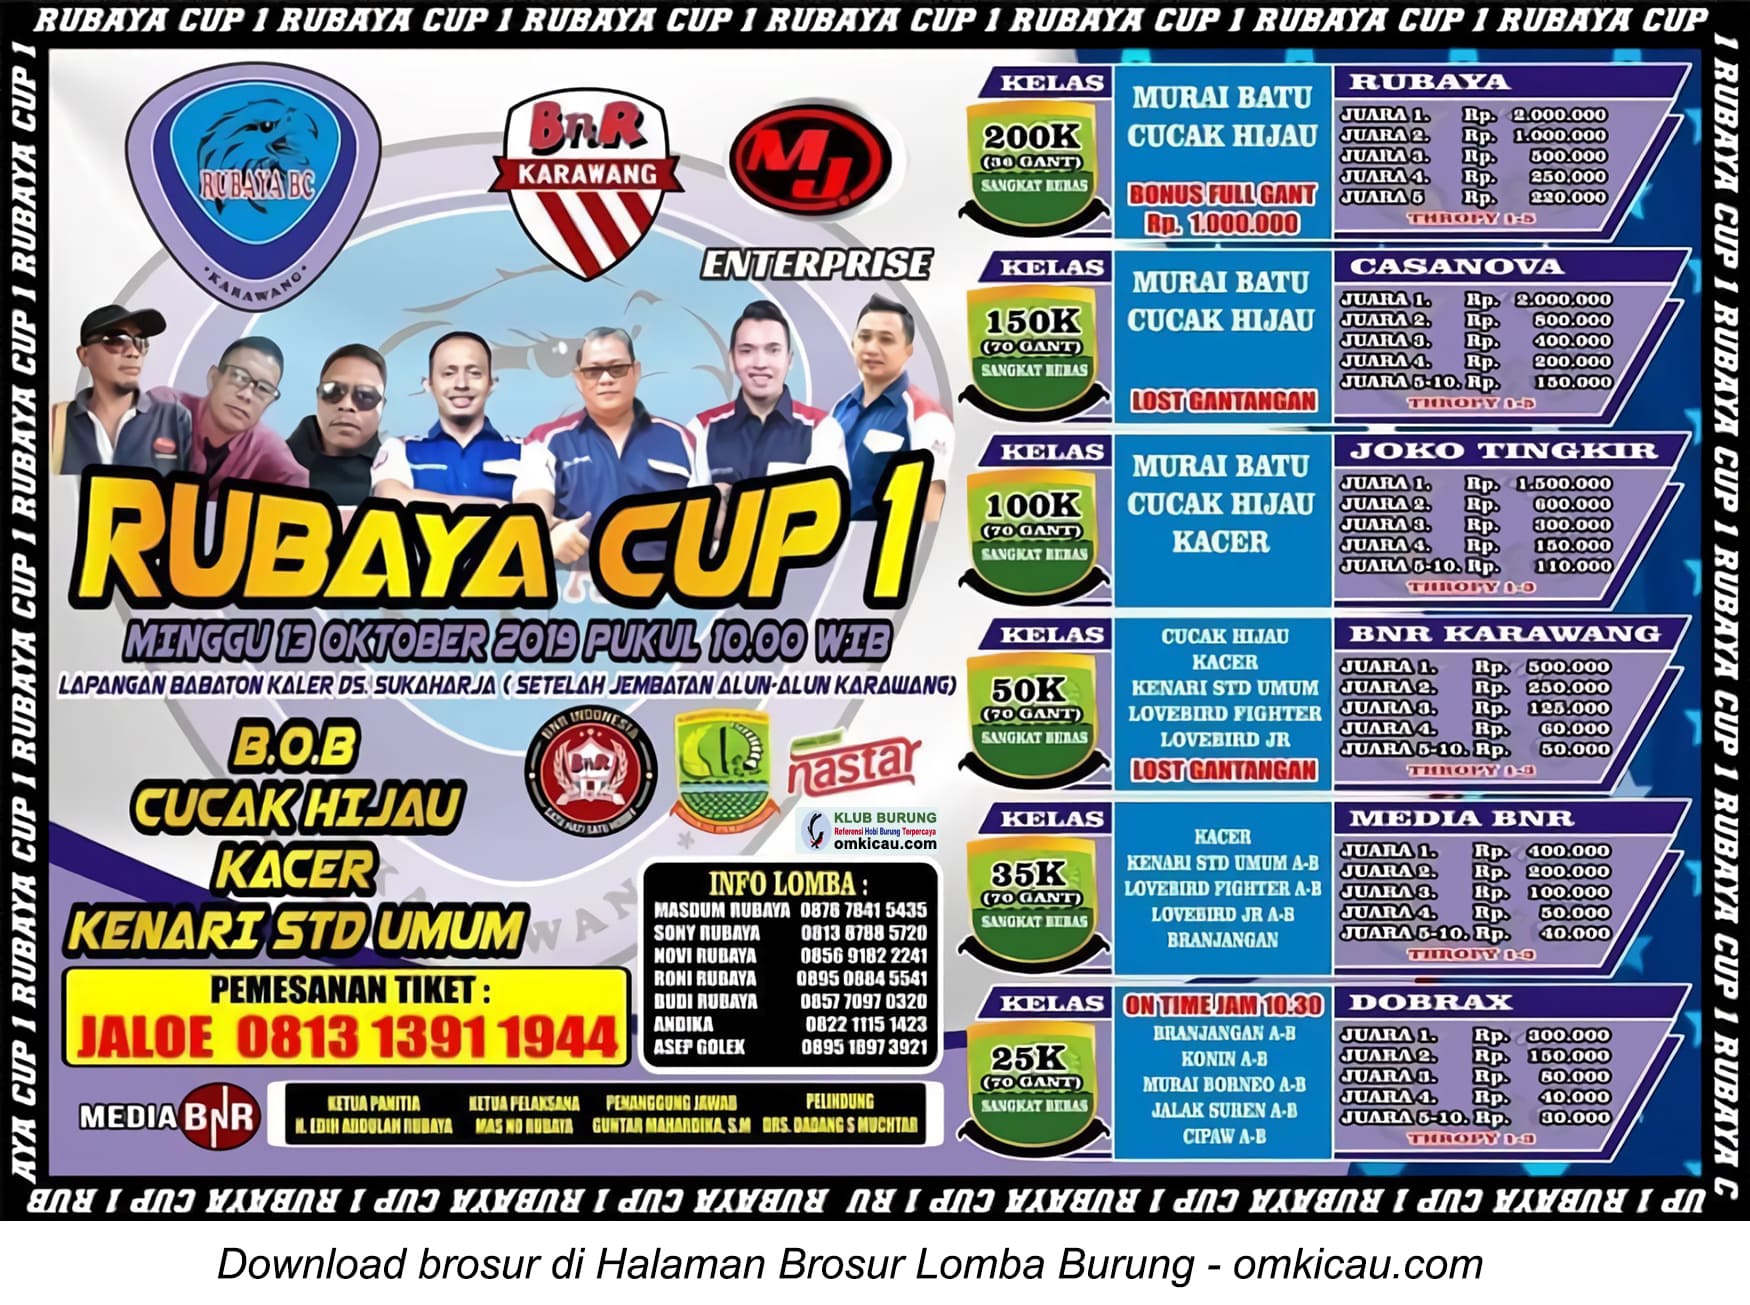 Rubaya Cup 1